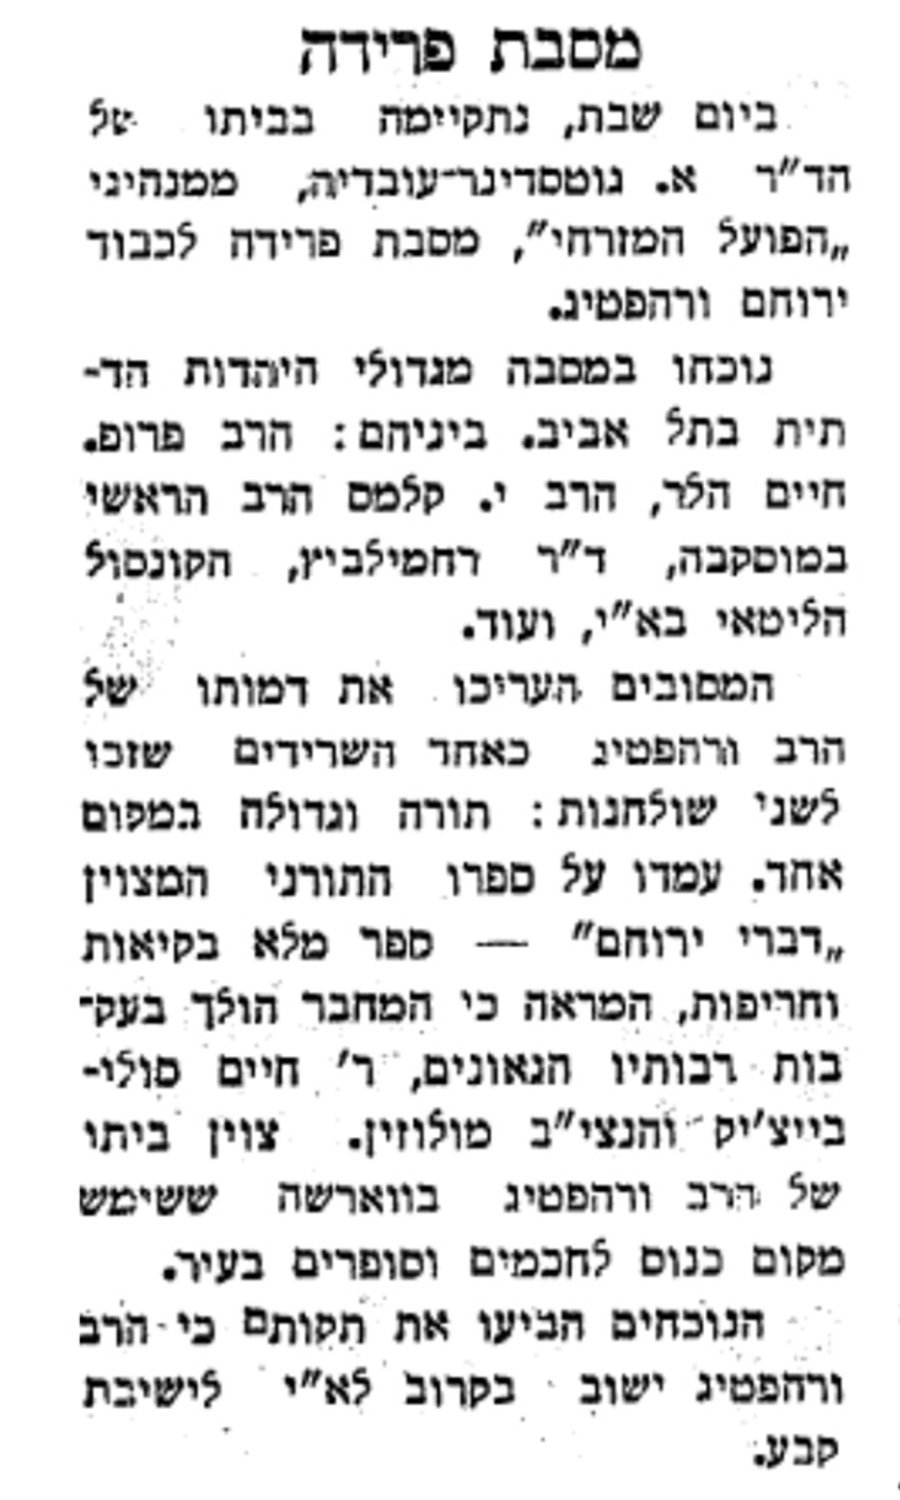 תל־אביב - דאר היום, 23/05/1935 מתאר מסיבת פרידה שעשה מנהיג תנועת הפועל המזרחי לרב ורהפטיג